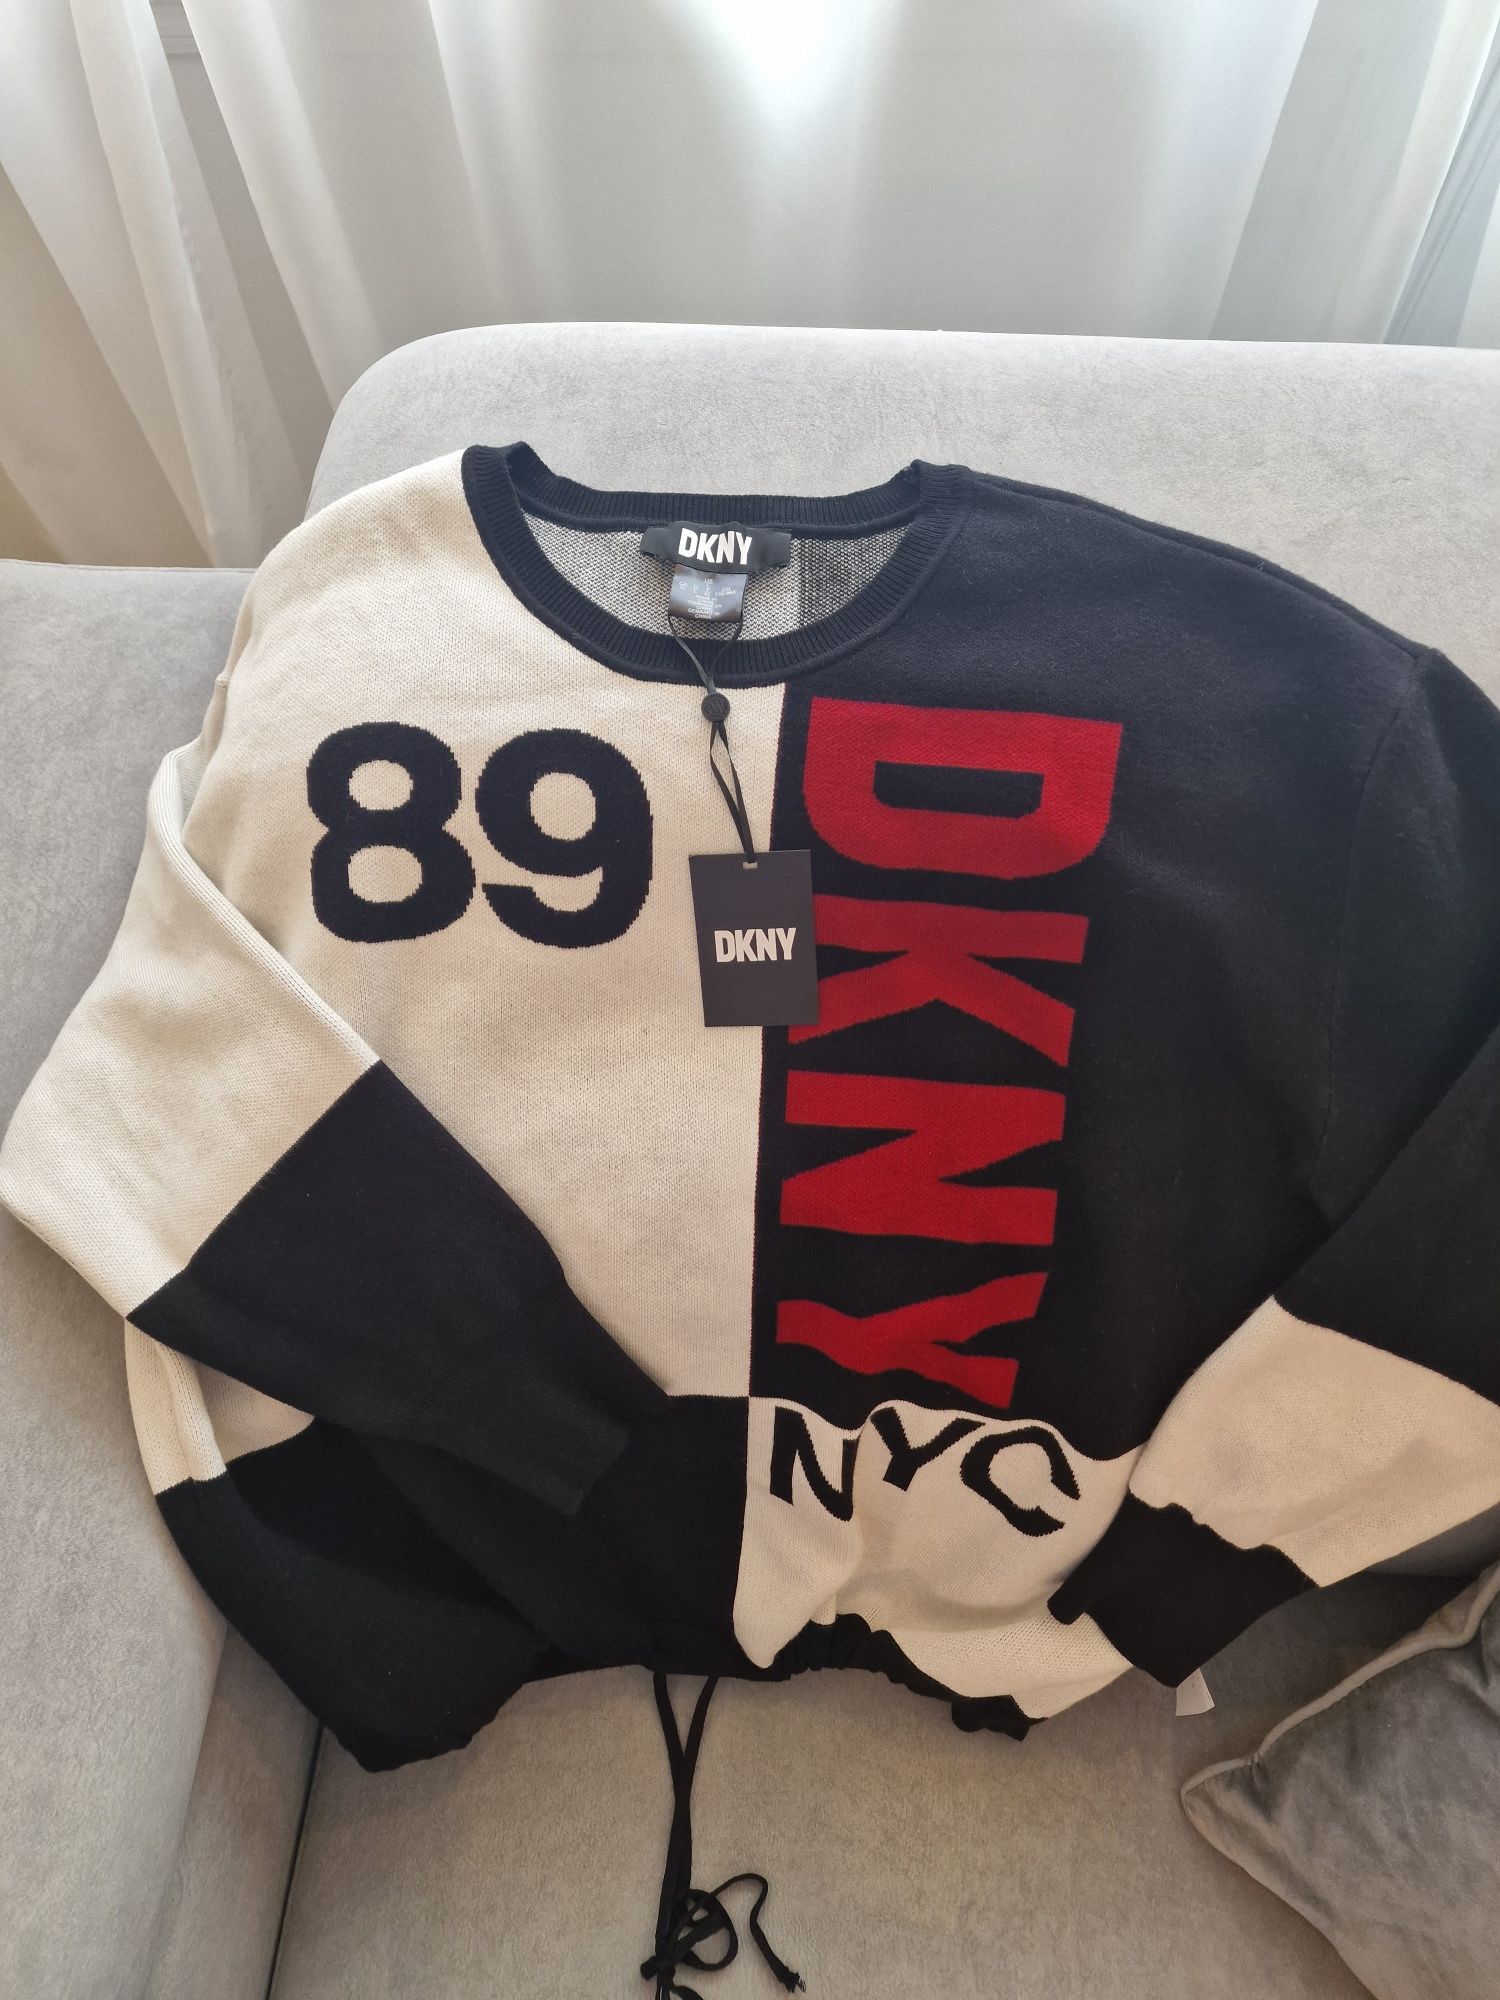 Promoção Camisola DKNY original